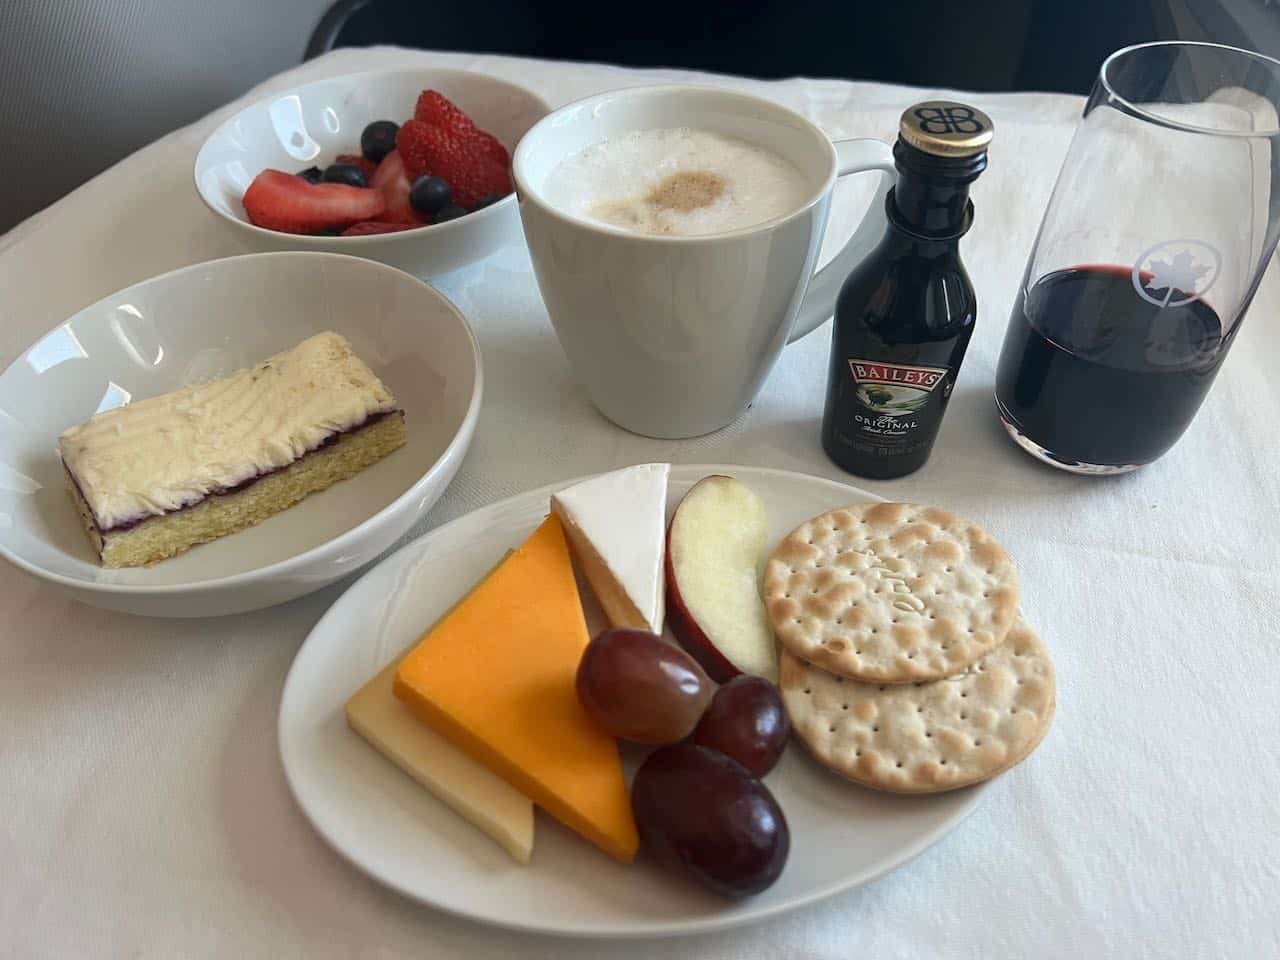 Air Canada Business Class dessert service.